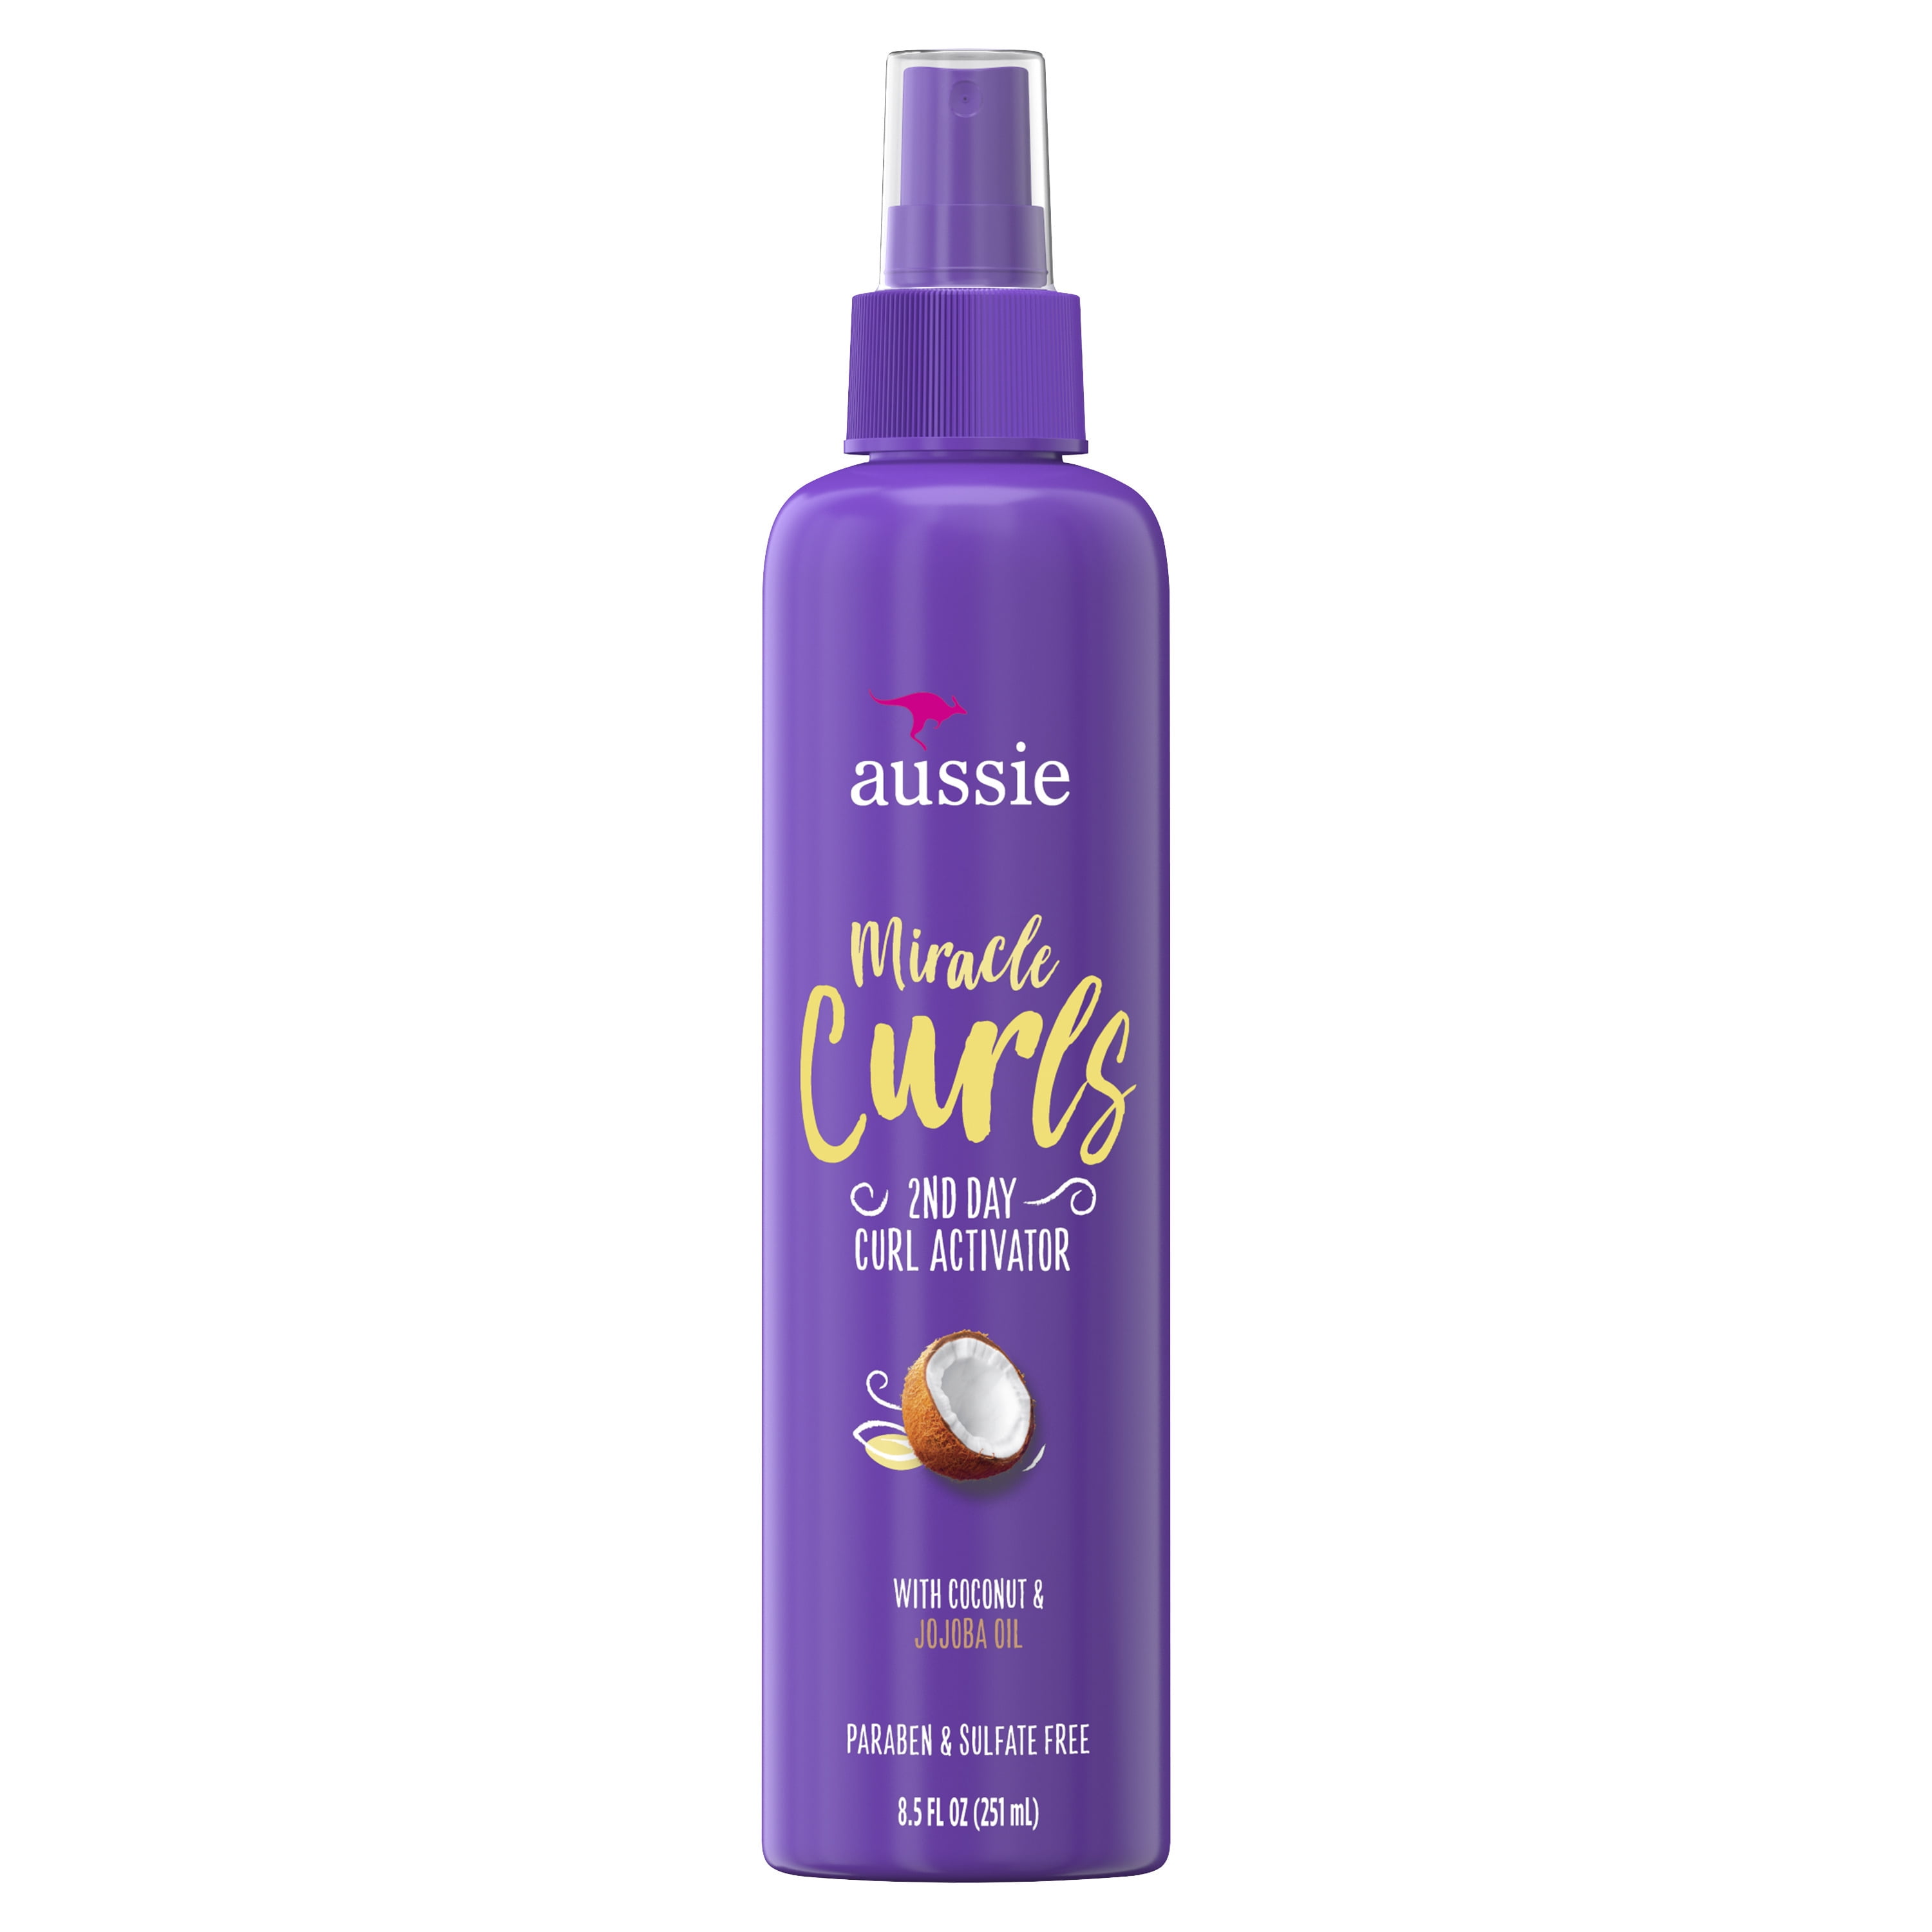 Aussie Miracle Curls 2nd Day Curl Activator Spray Gel, 8.5 fl oz